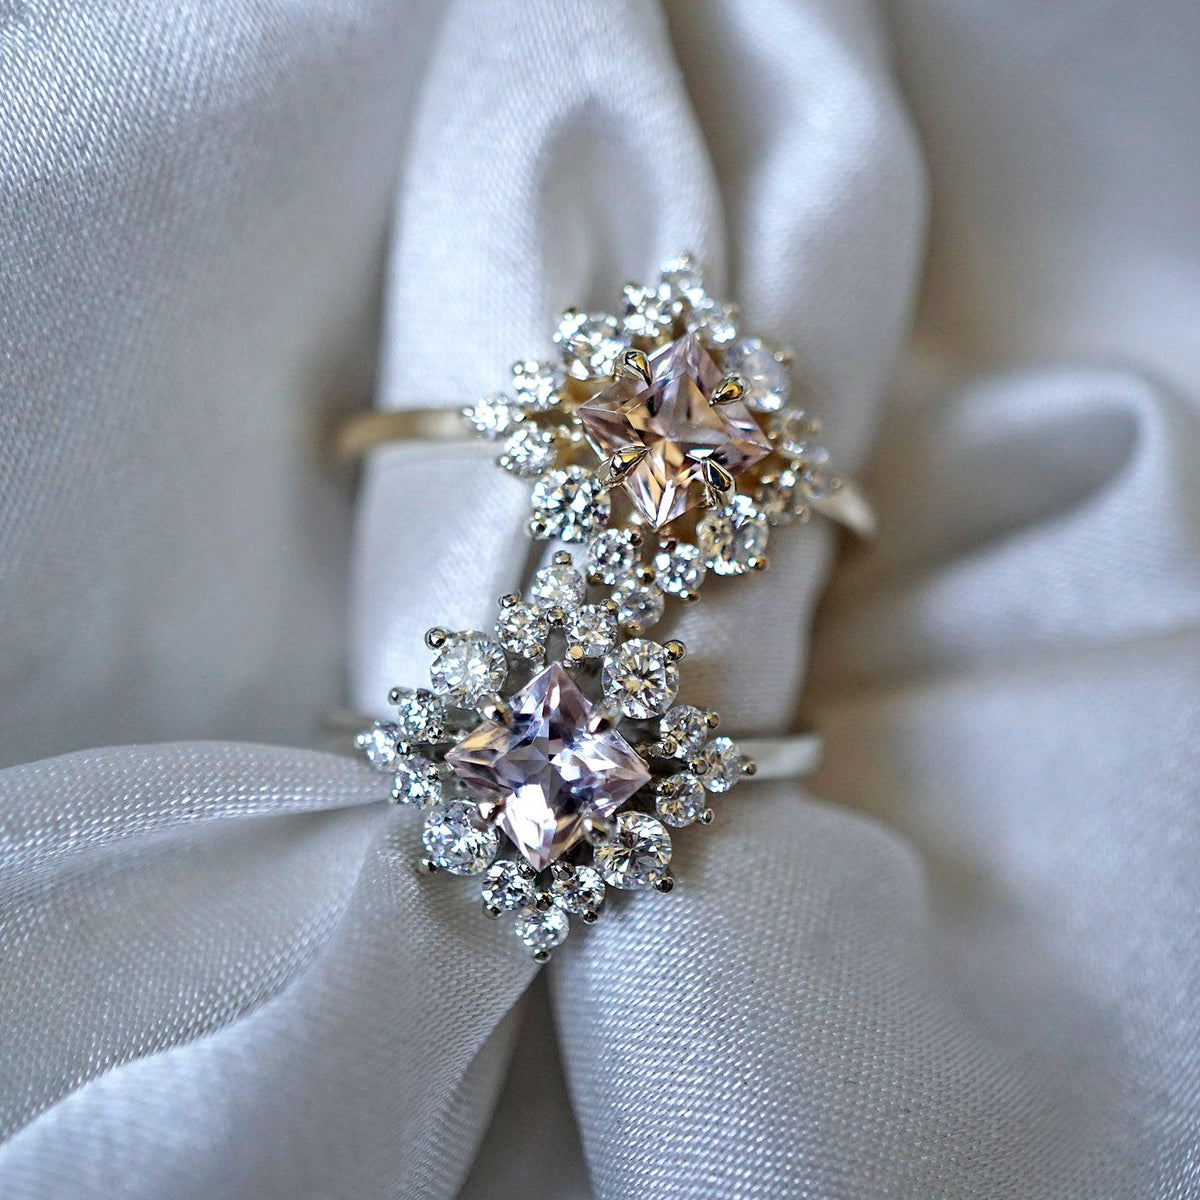 Aphrodite Morganite Diamond Ring in 14K and 18K Gold - Tippy Taste Jewelry